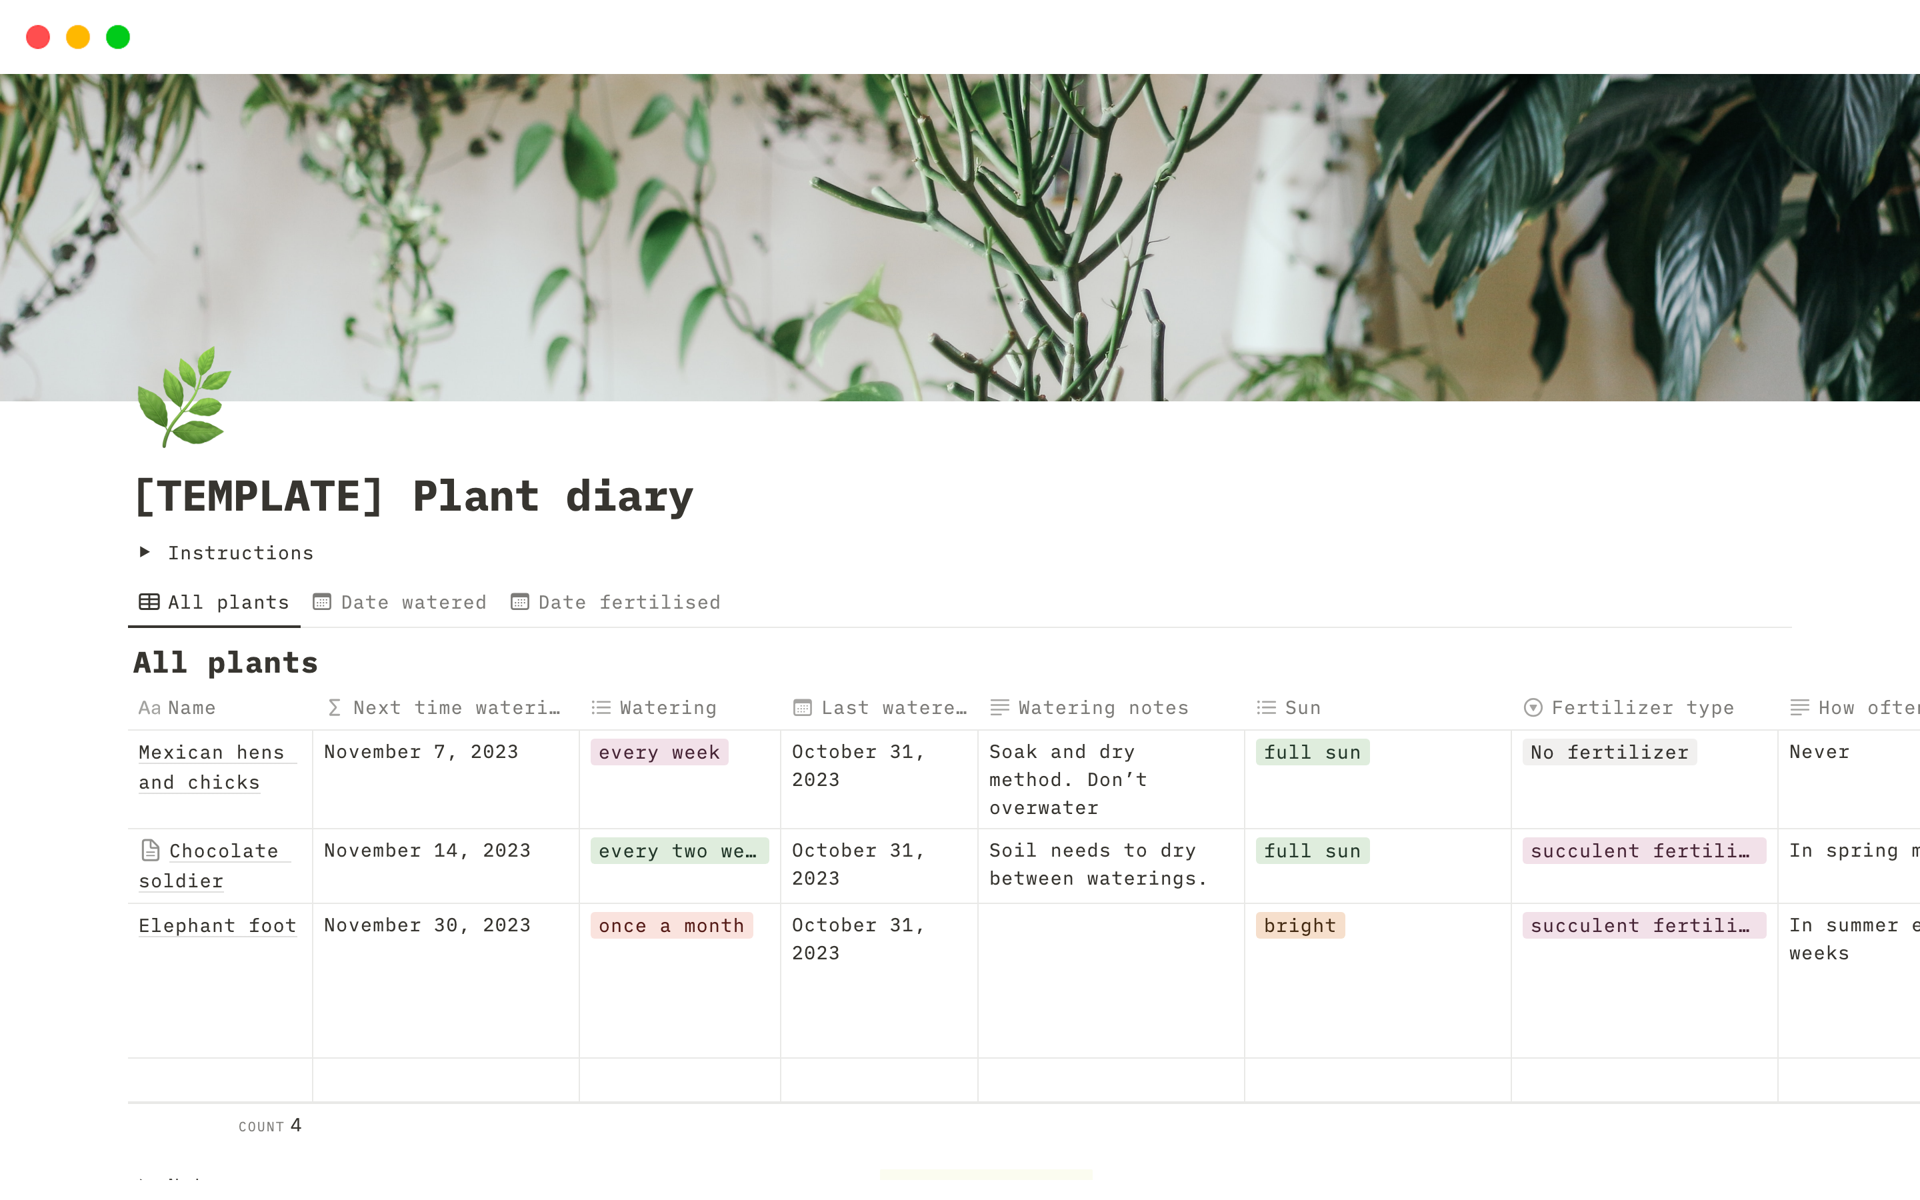 Aperçu du modèle de Plant diary